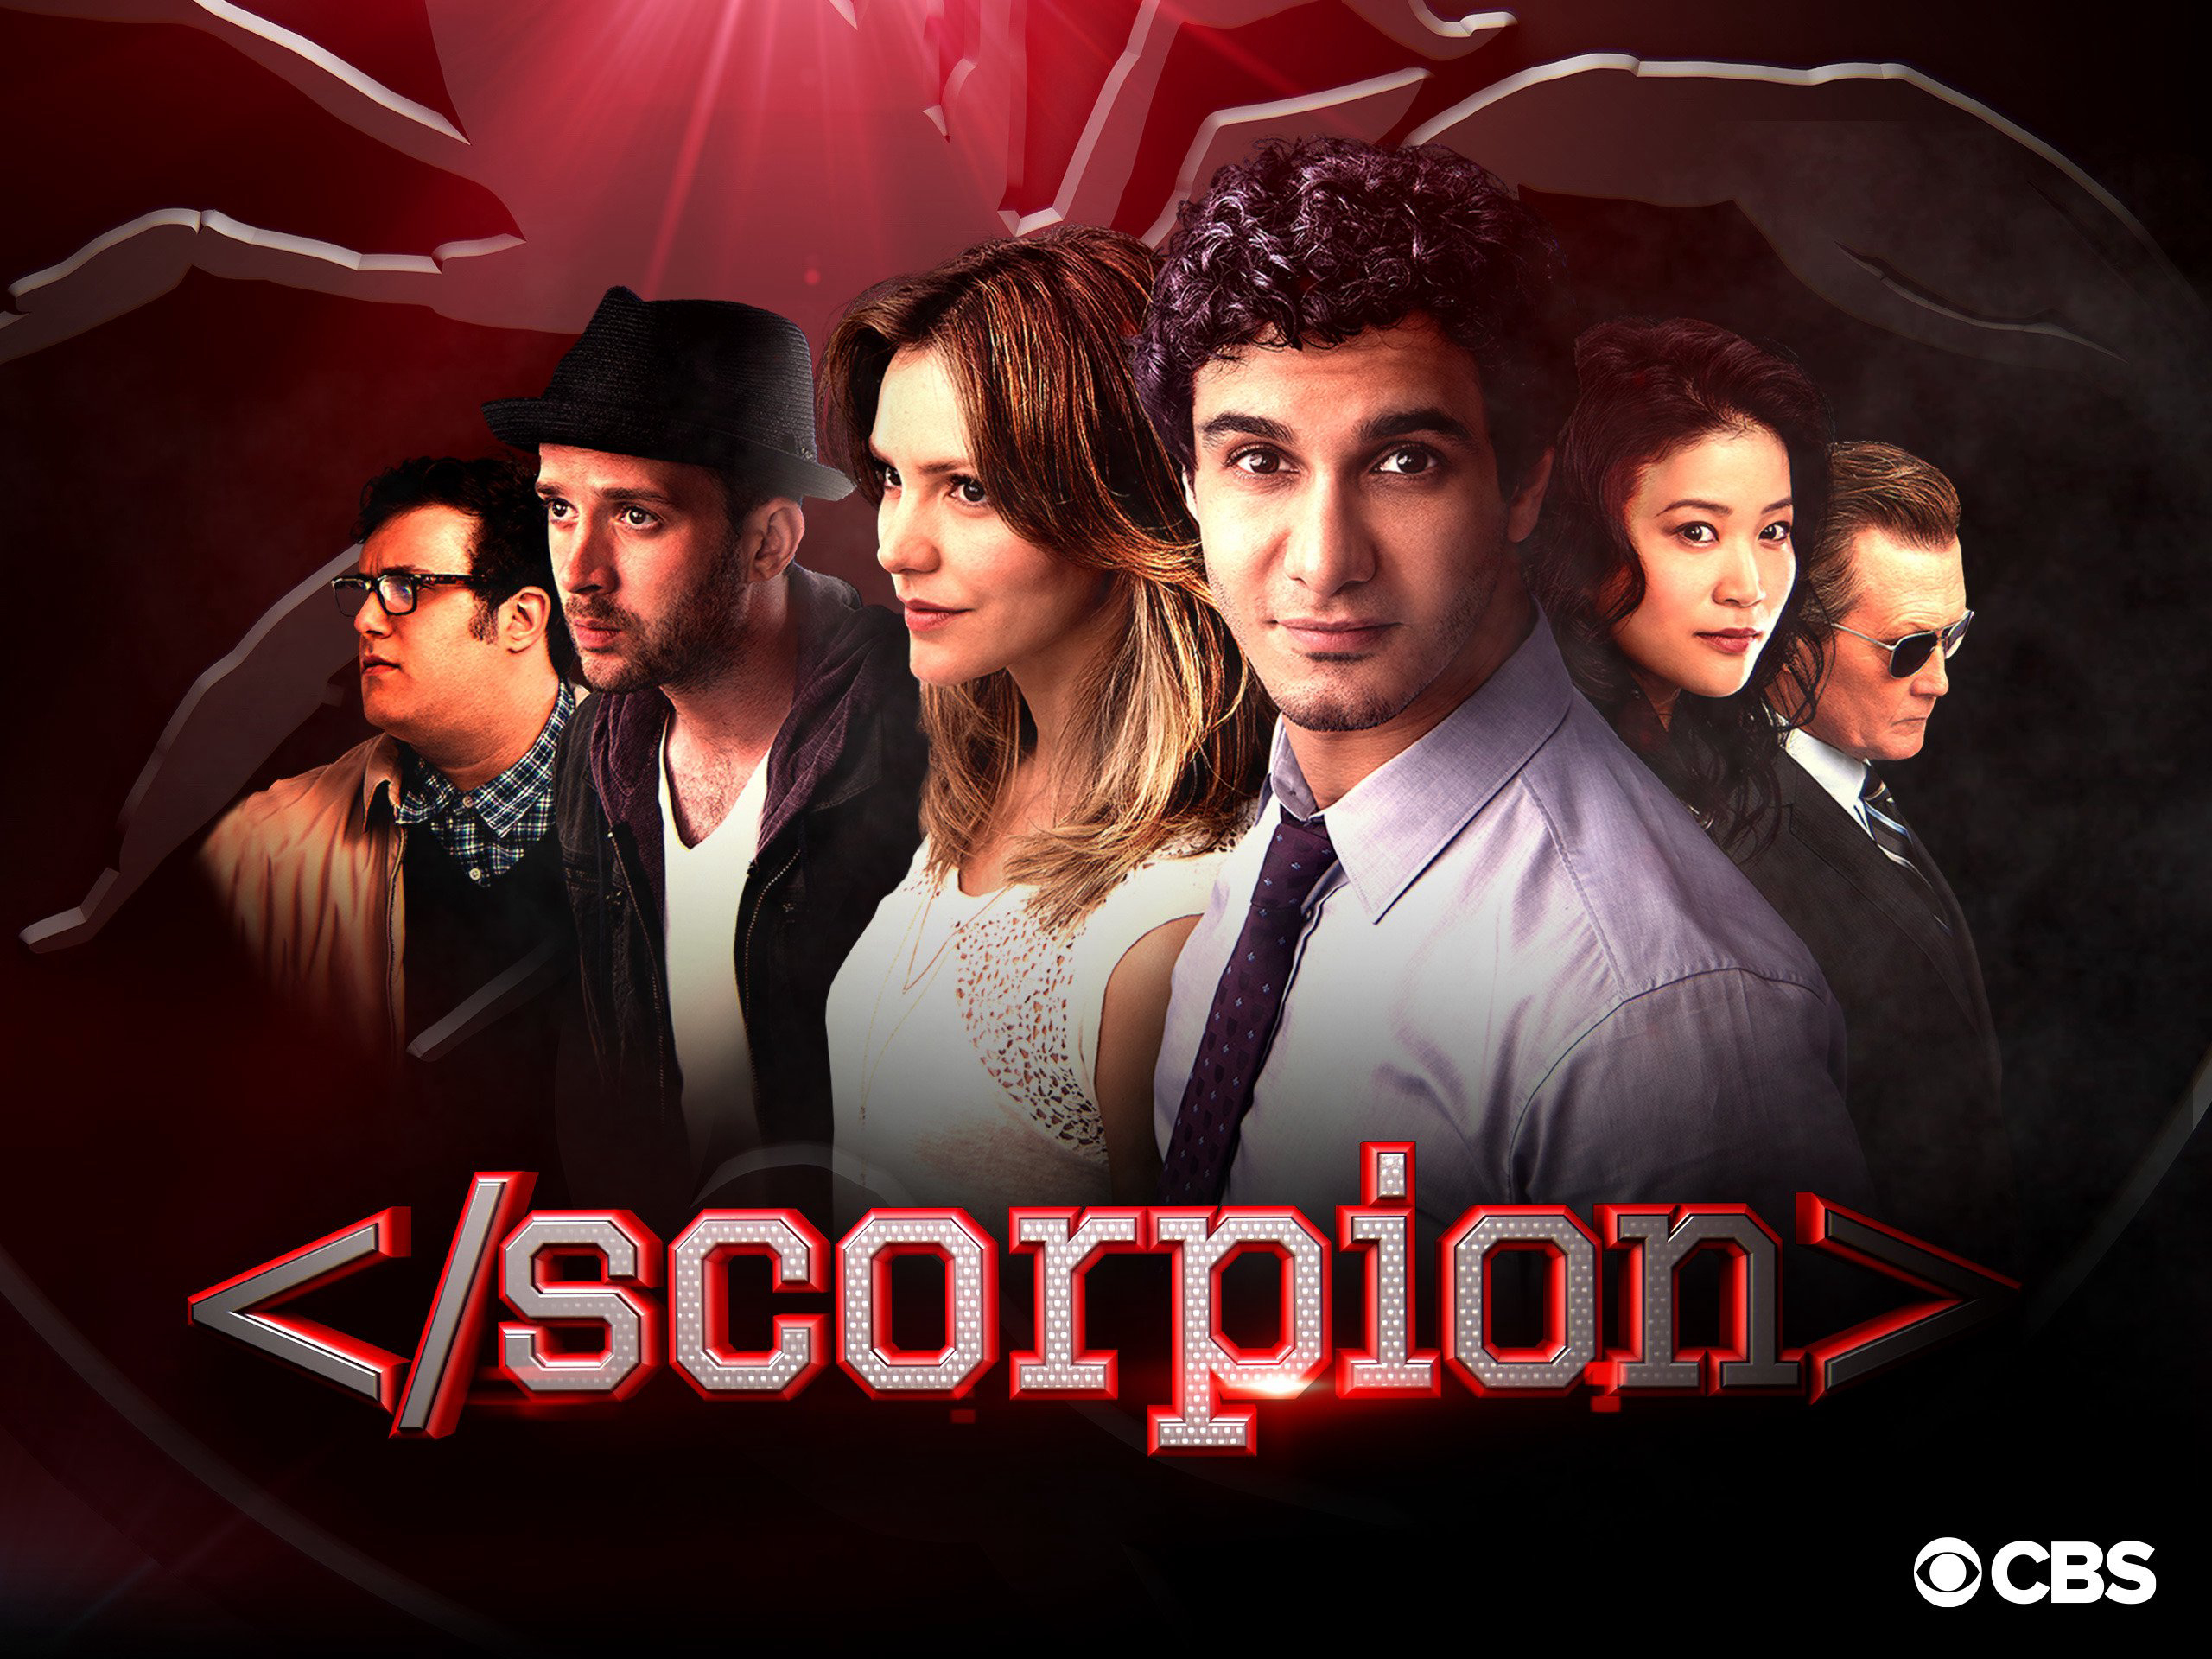 Scorpion (Season 4) / Scorpion (Season 4) (2017)